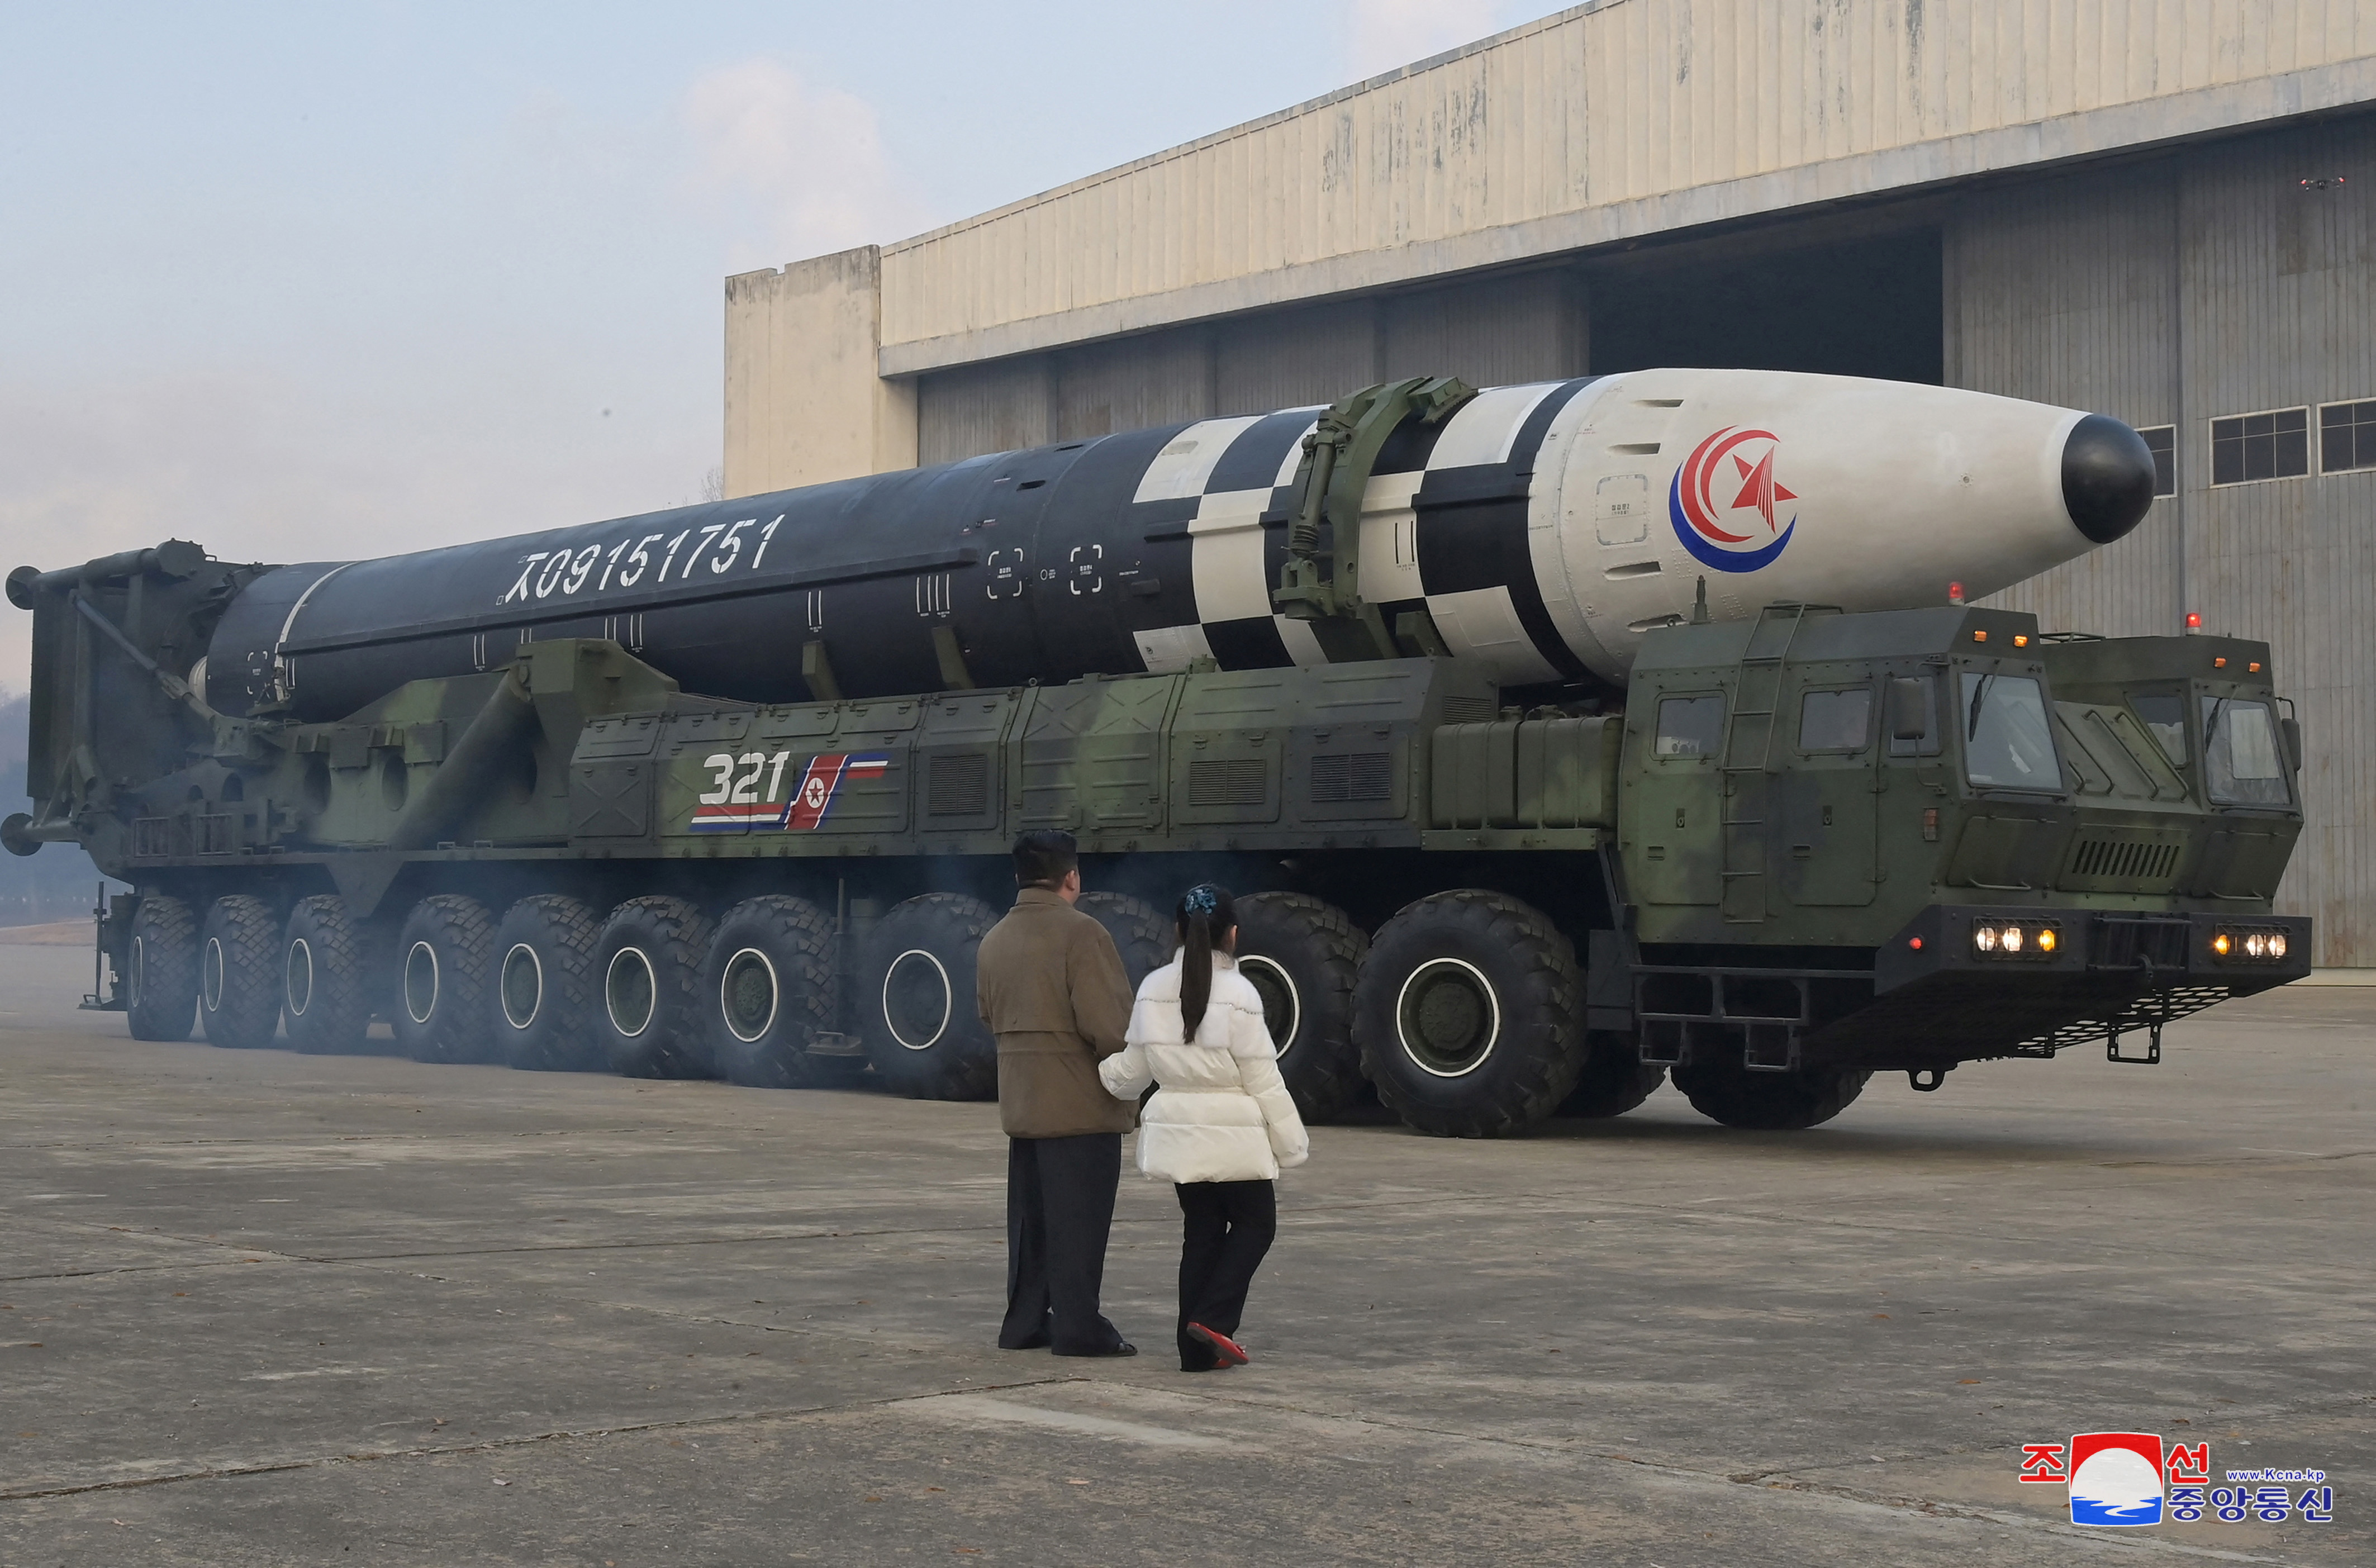 Βόρεια Κορέα: Ο Κιμ Γιονγκ Ουν παρουσίασε για πρώτη φορά την κόρη του και απείλησε με ατομική βόμβα-3